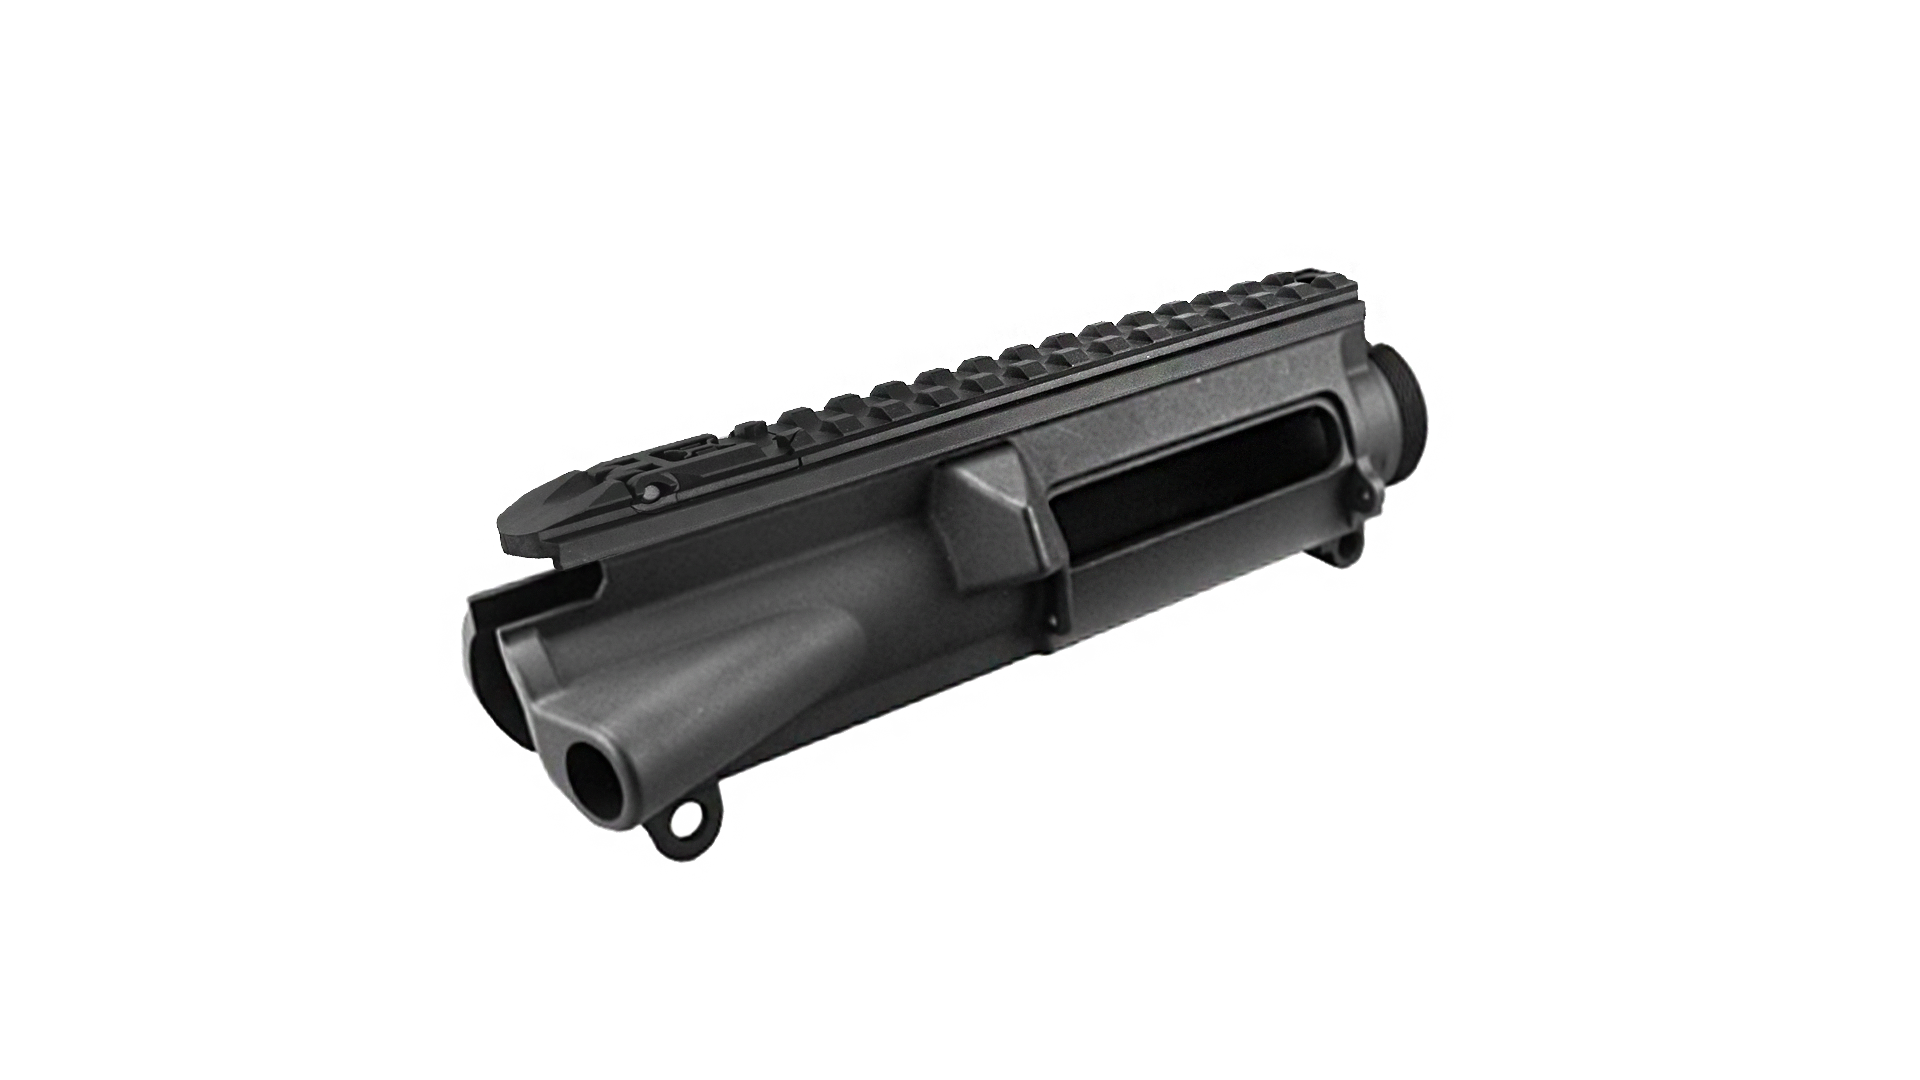 【MA-248】CXP-15 塑膠上槍身 - 黑色